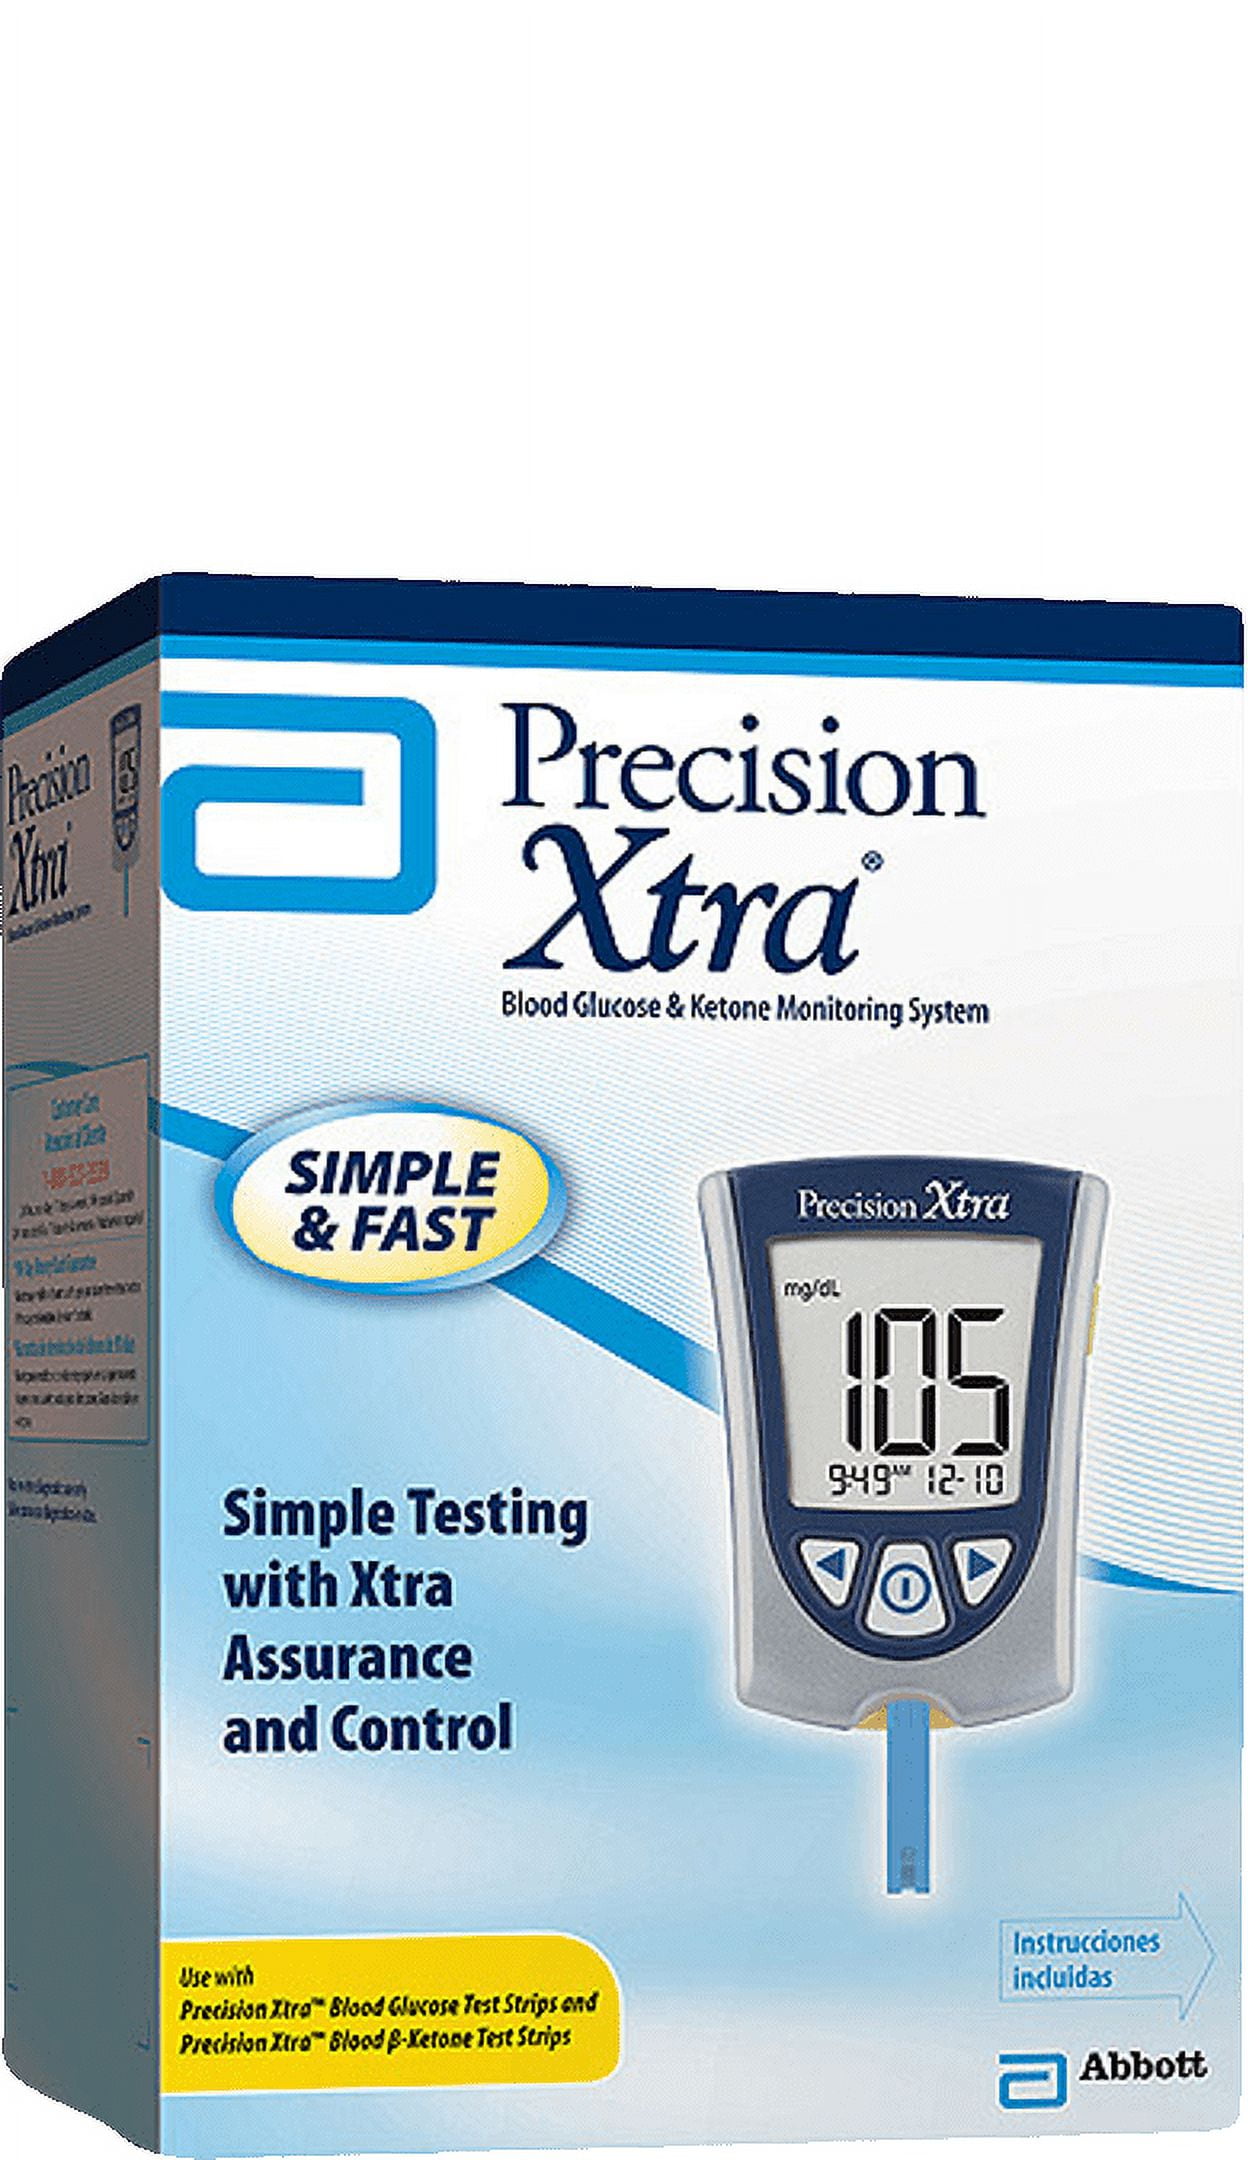 Abbott Diabetes Care 98814 Precision Xtra Diabetes Management System